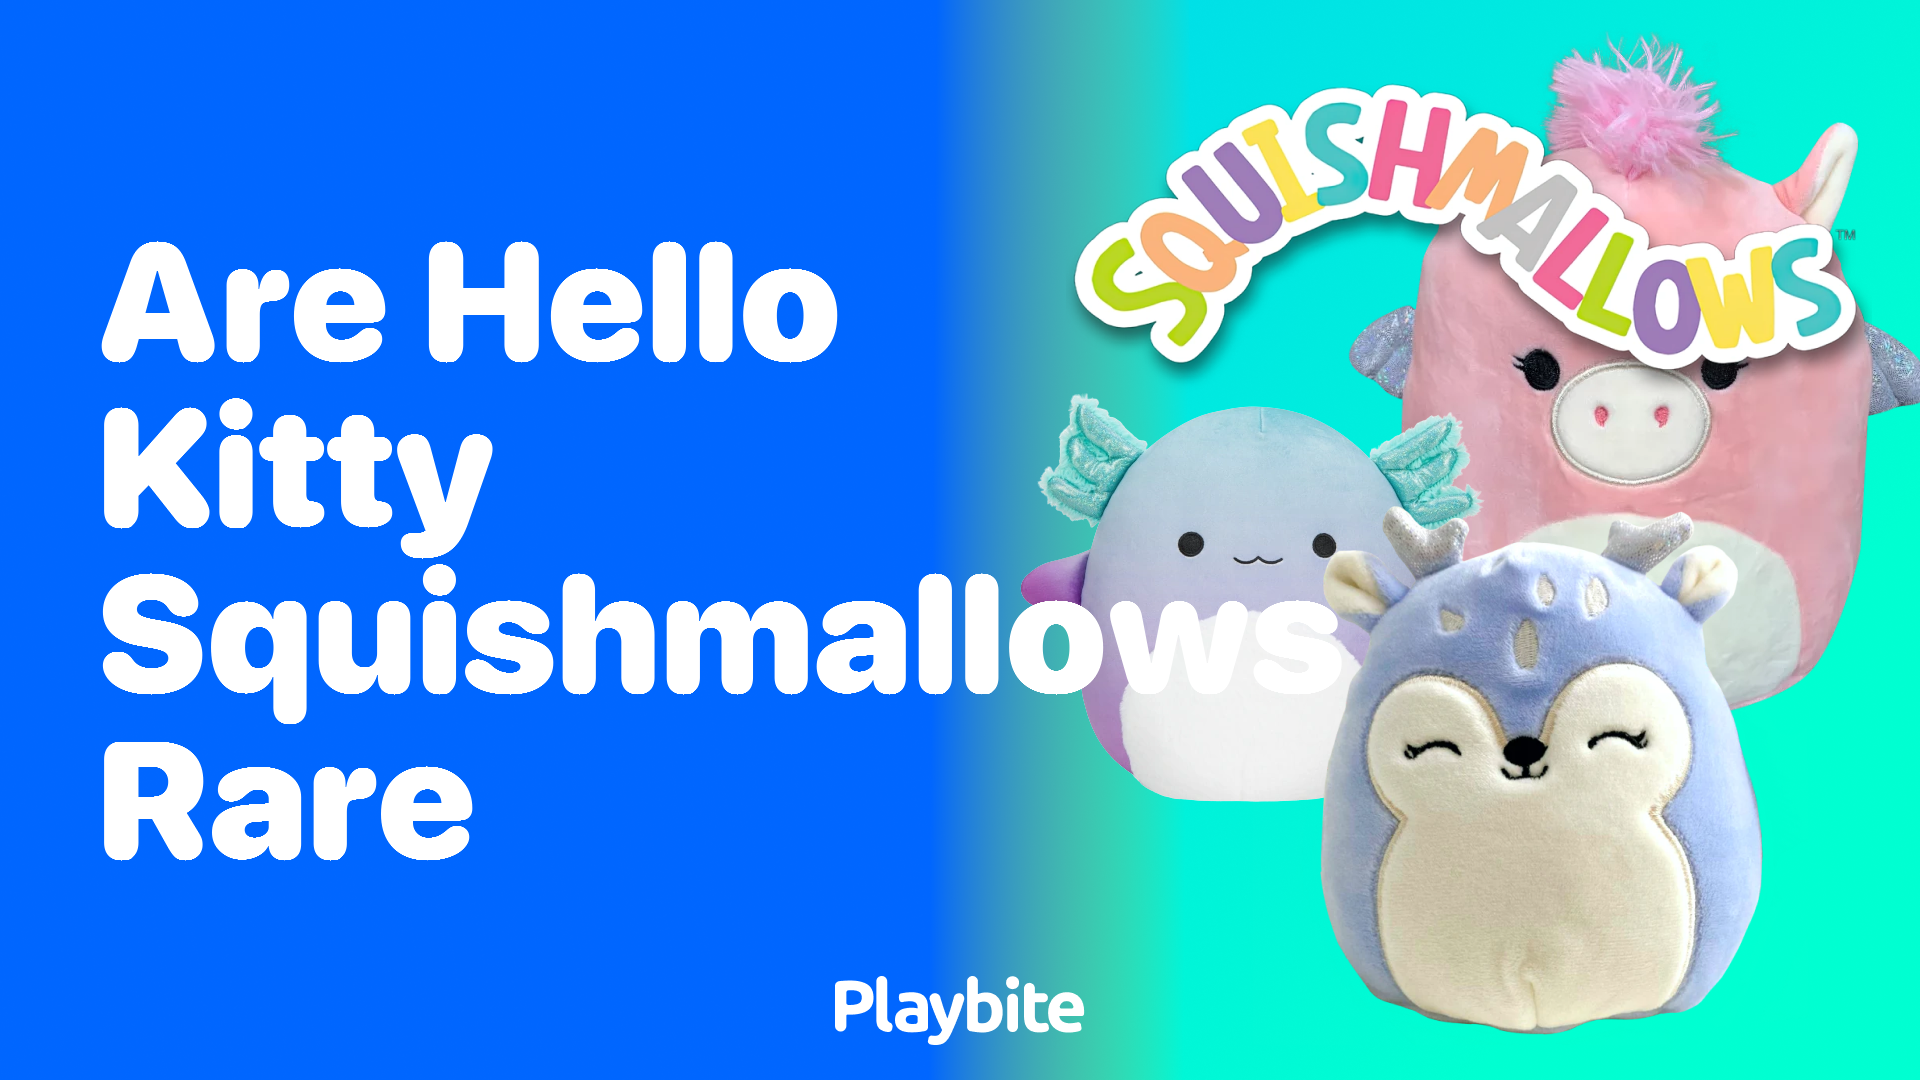 Are Hello Kitty Squishmallows Rare?